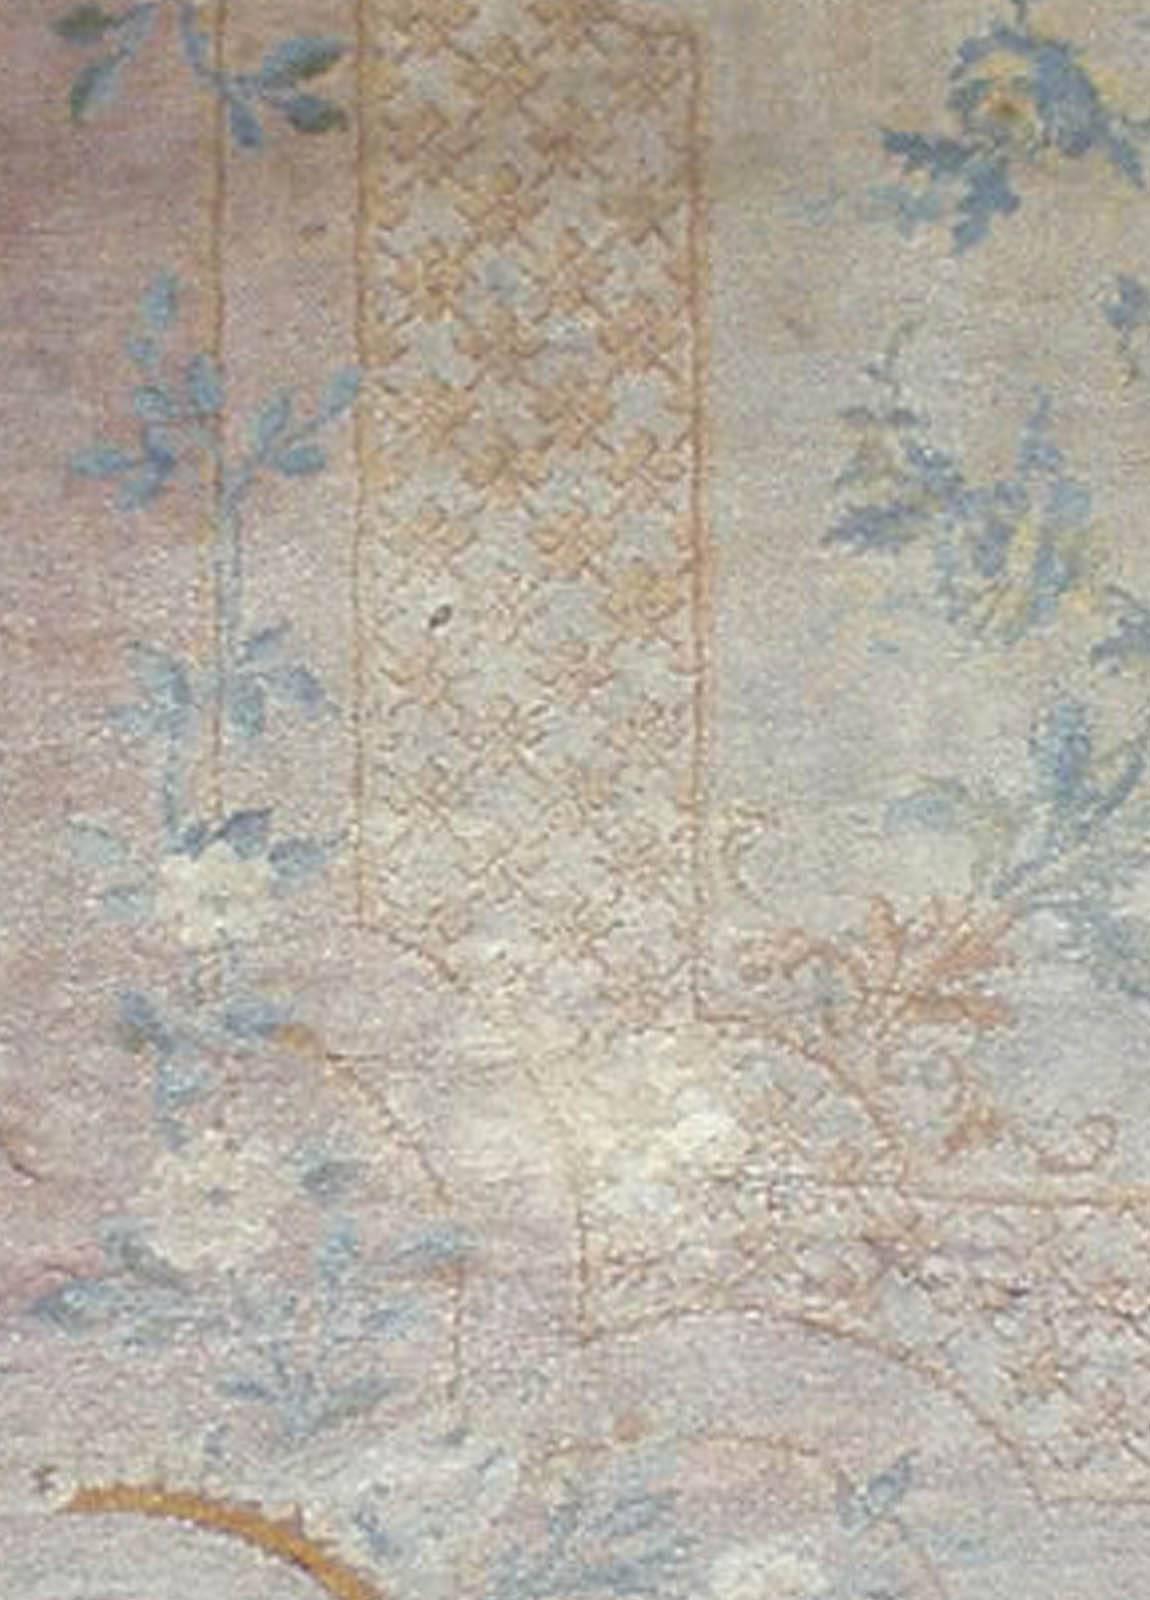 Authentic Oversized Antique Savonnerie Carpet
Size: 20'9